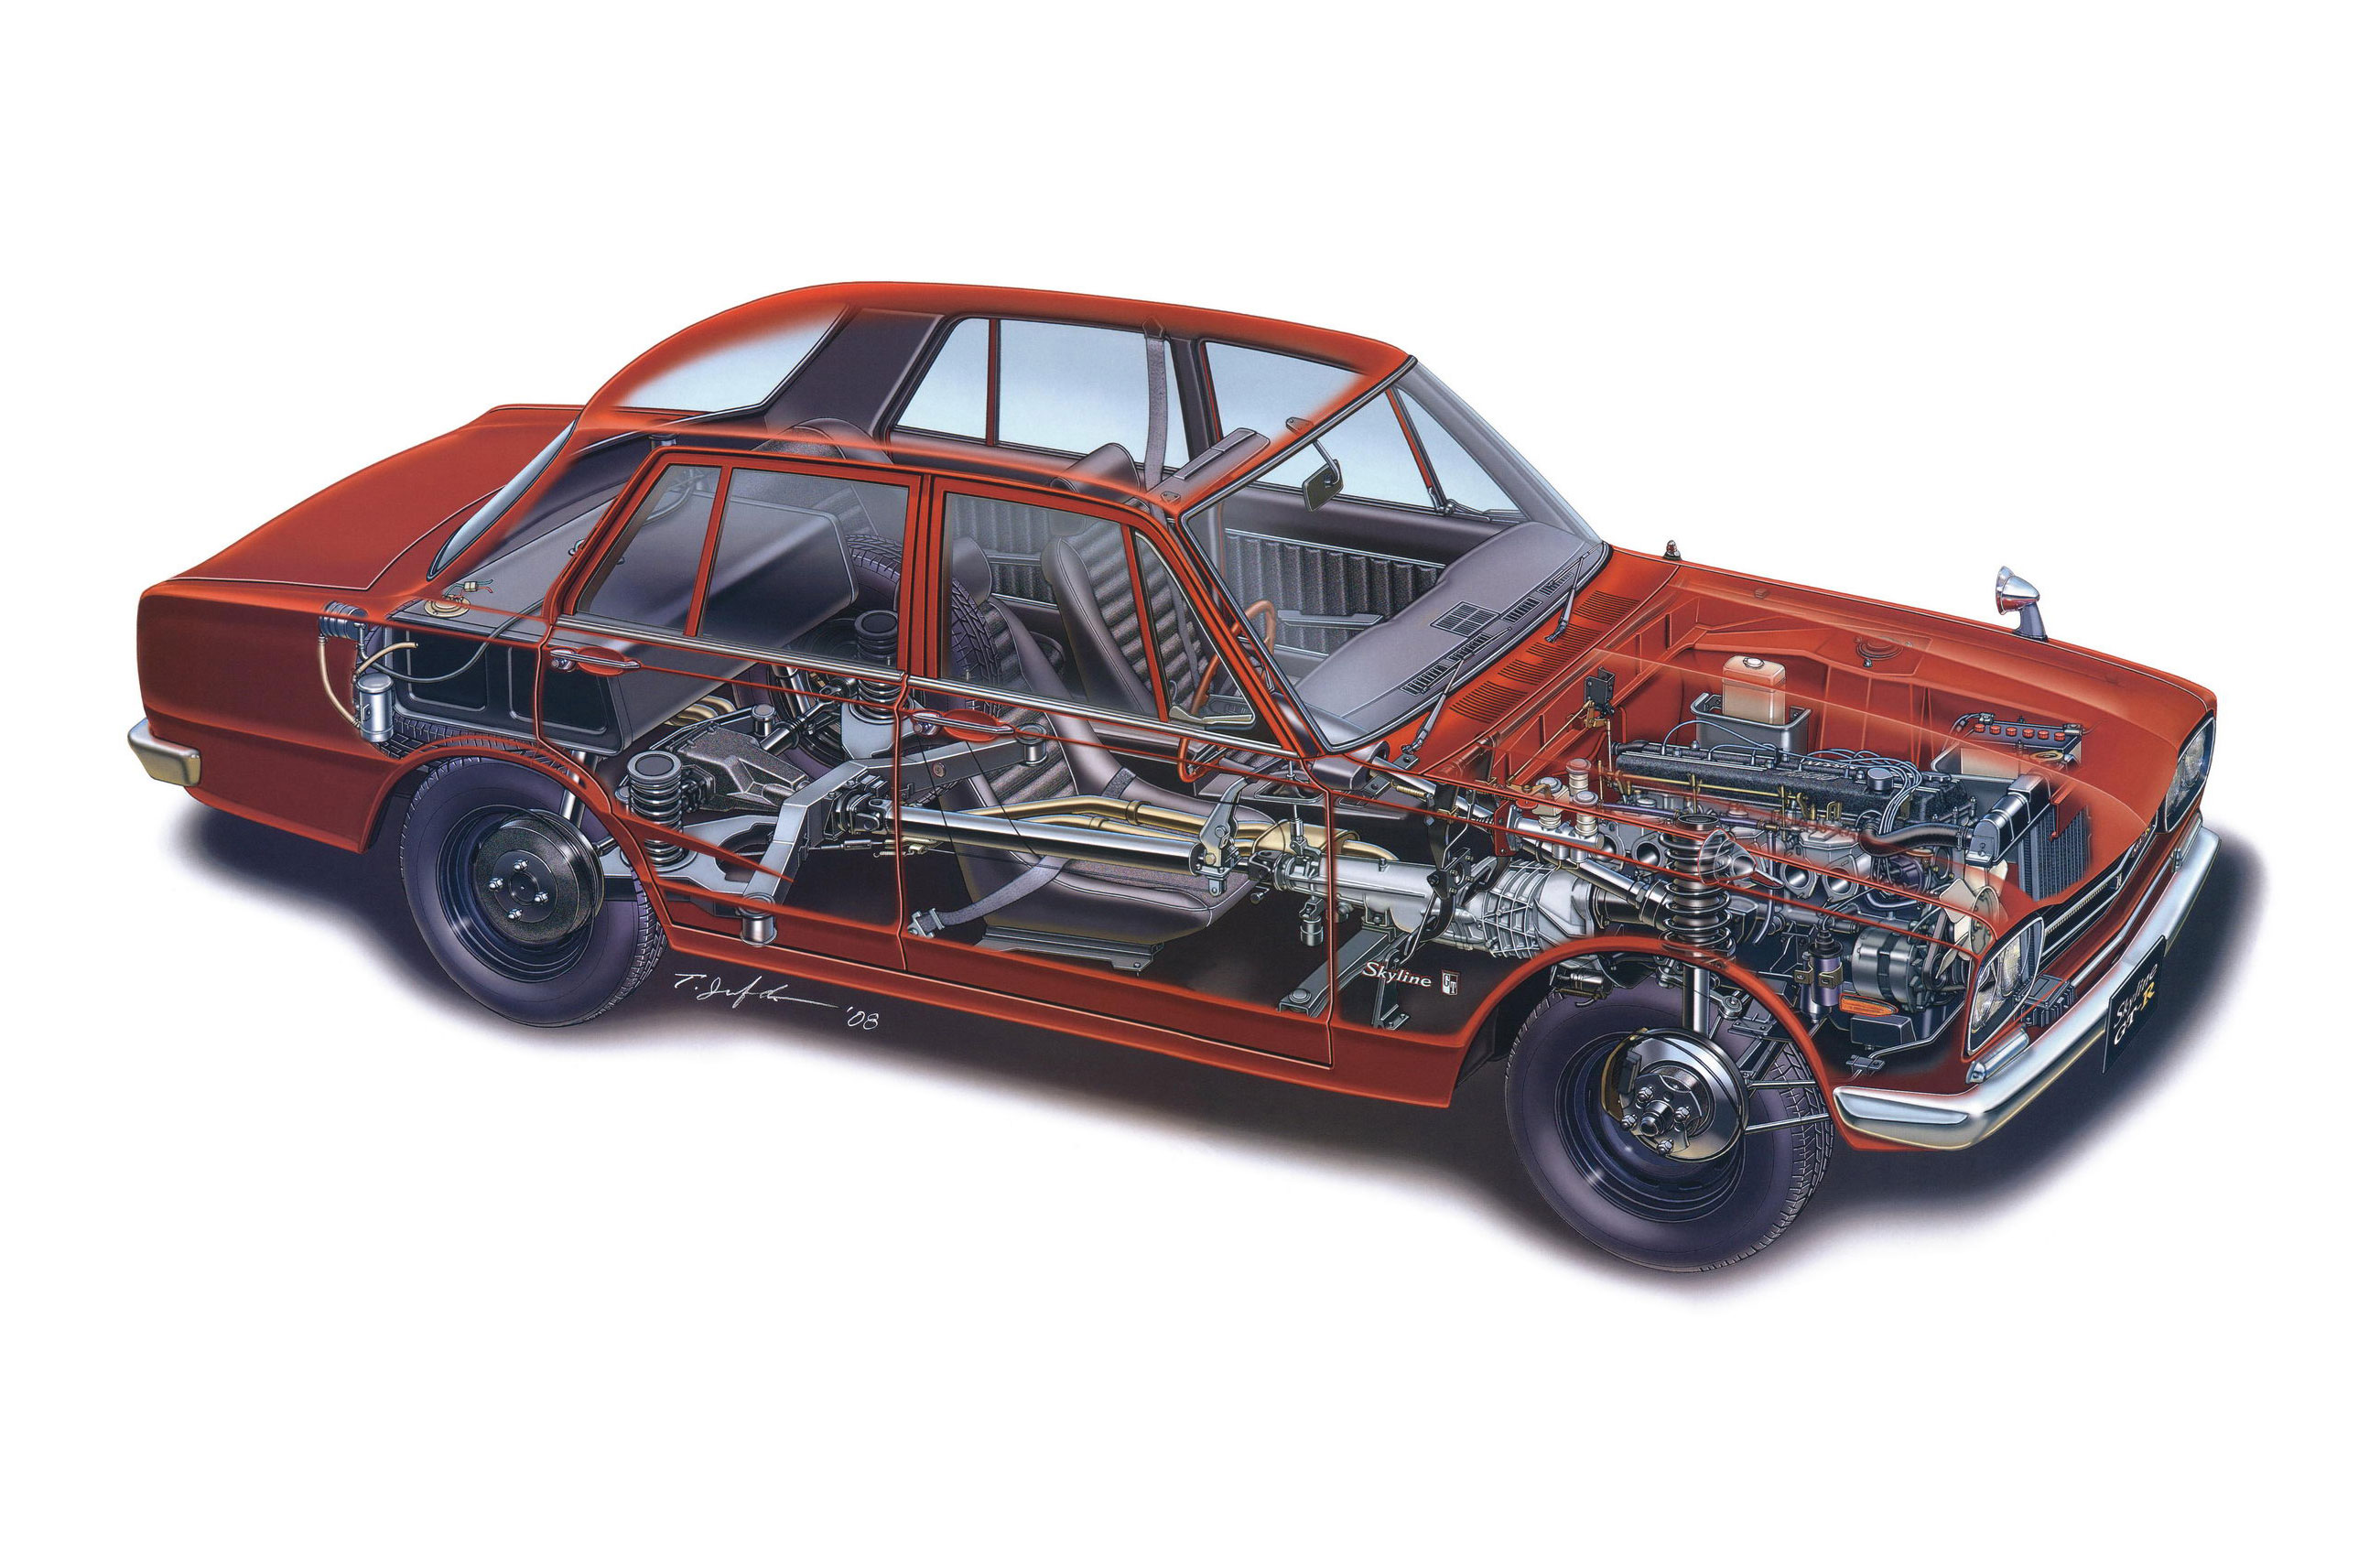 Nissan Skyline 2000 GT-R cutaway drawing